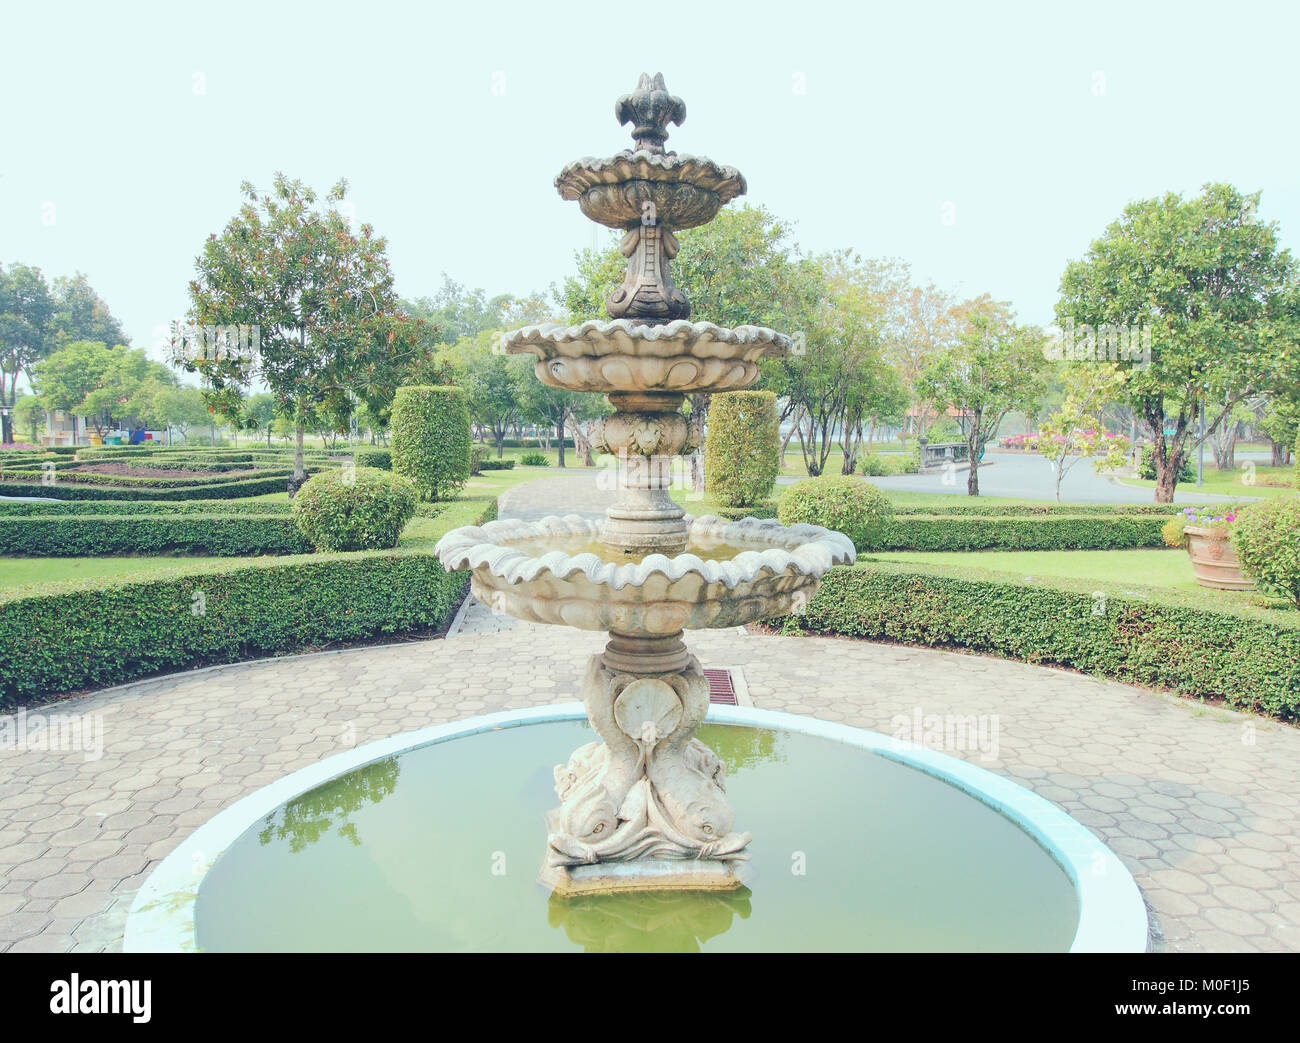 Fontana multi-tiered nel parco, colori freschi Foto Stock